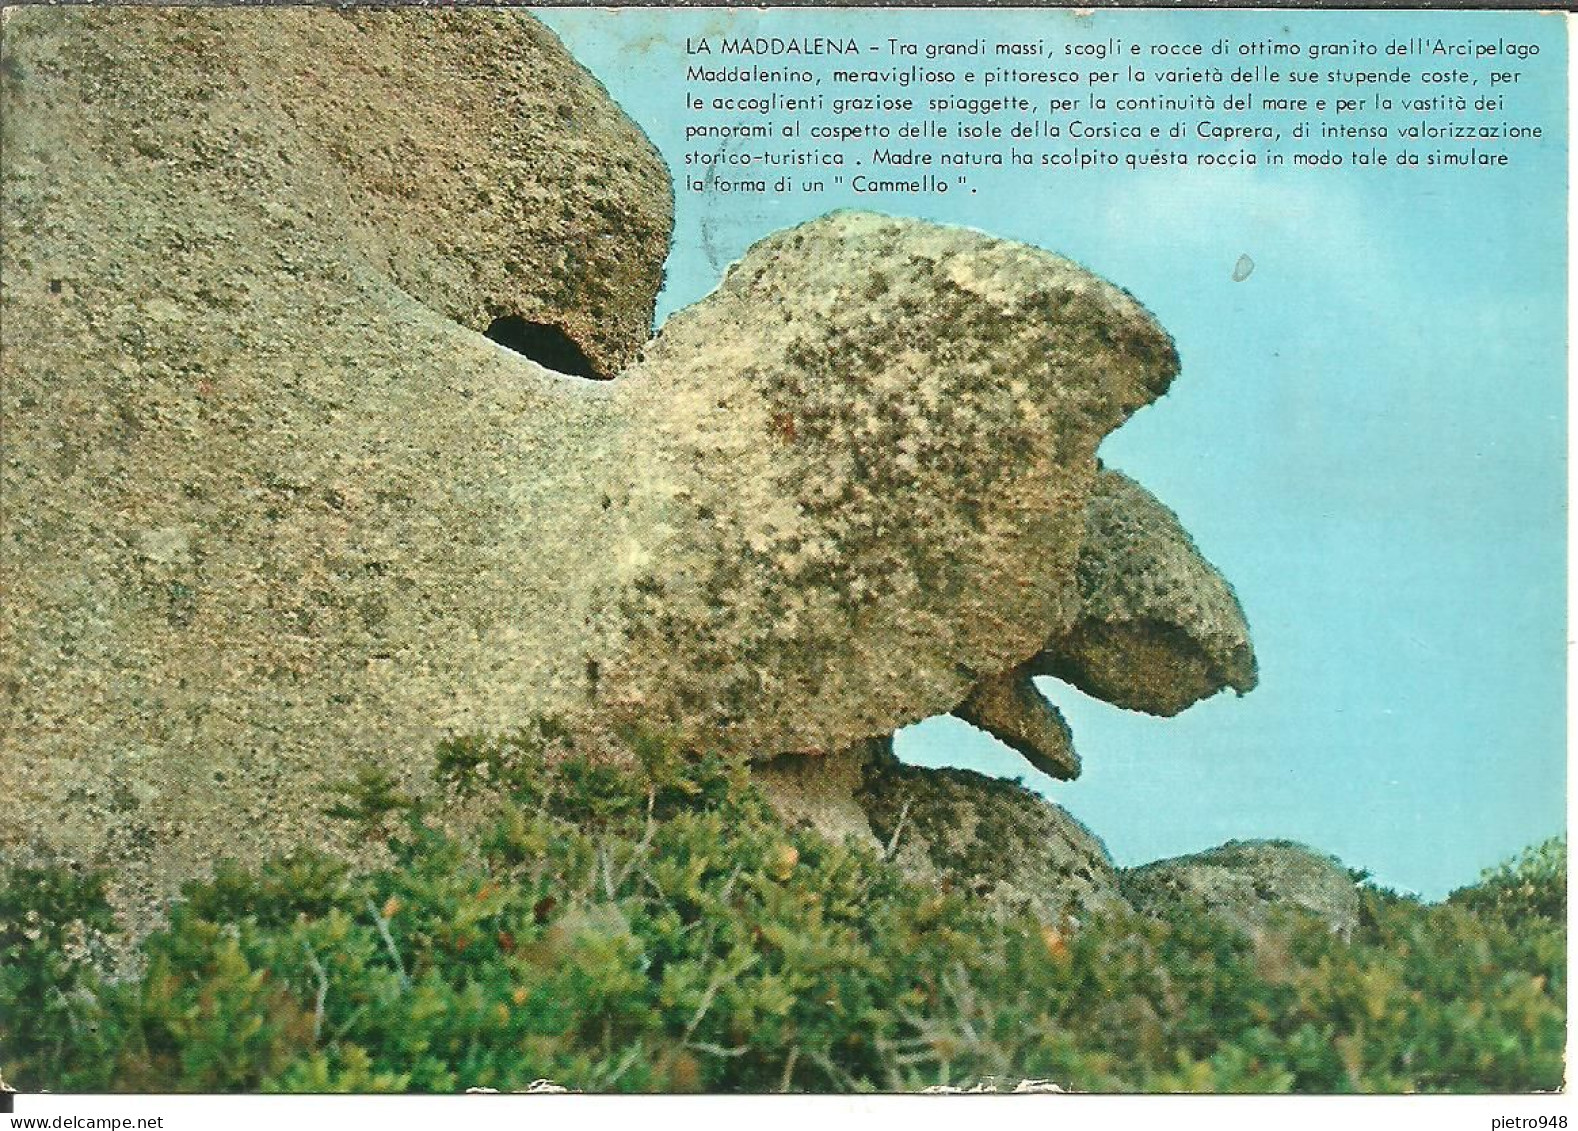 La Maddalena (Olbia) Roccia A Forma Di Un Cammello, Rock In The Shape Of A Camel, Rocher En Forme De Chameau - Olbia